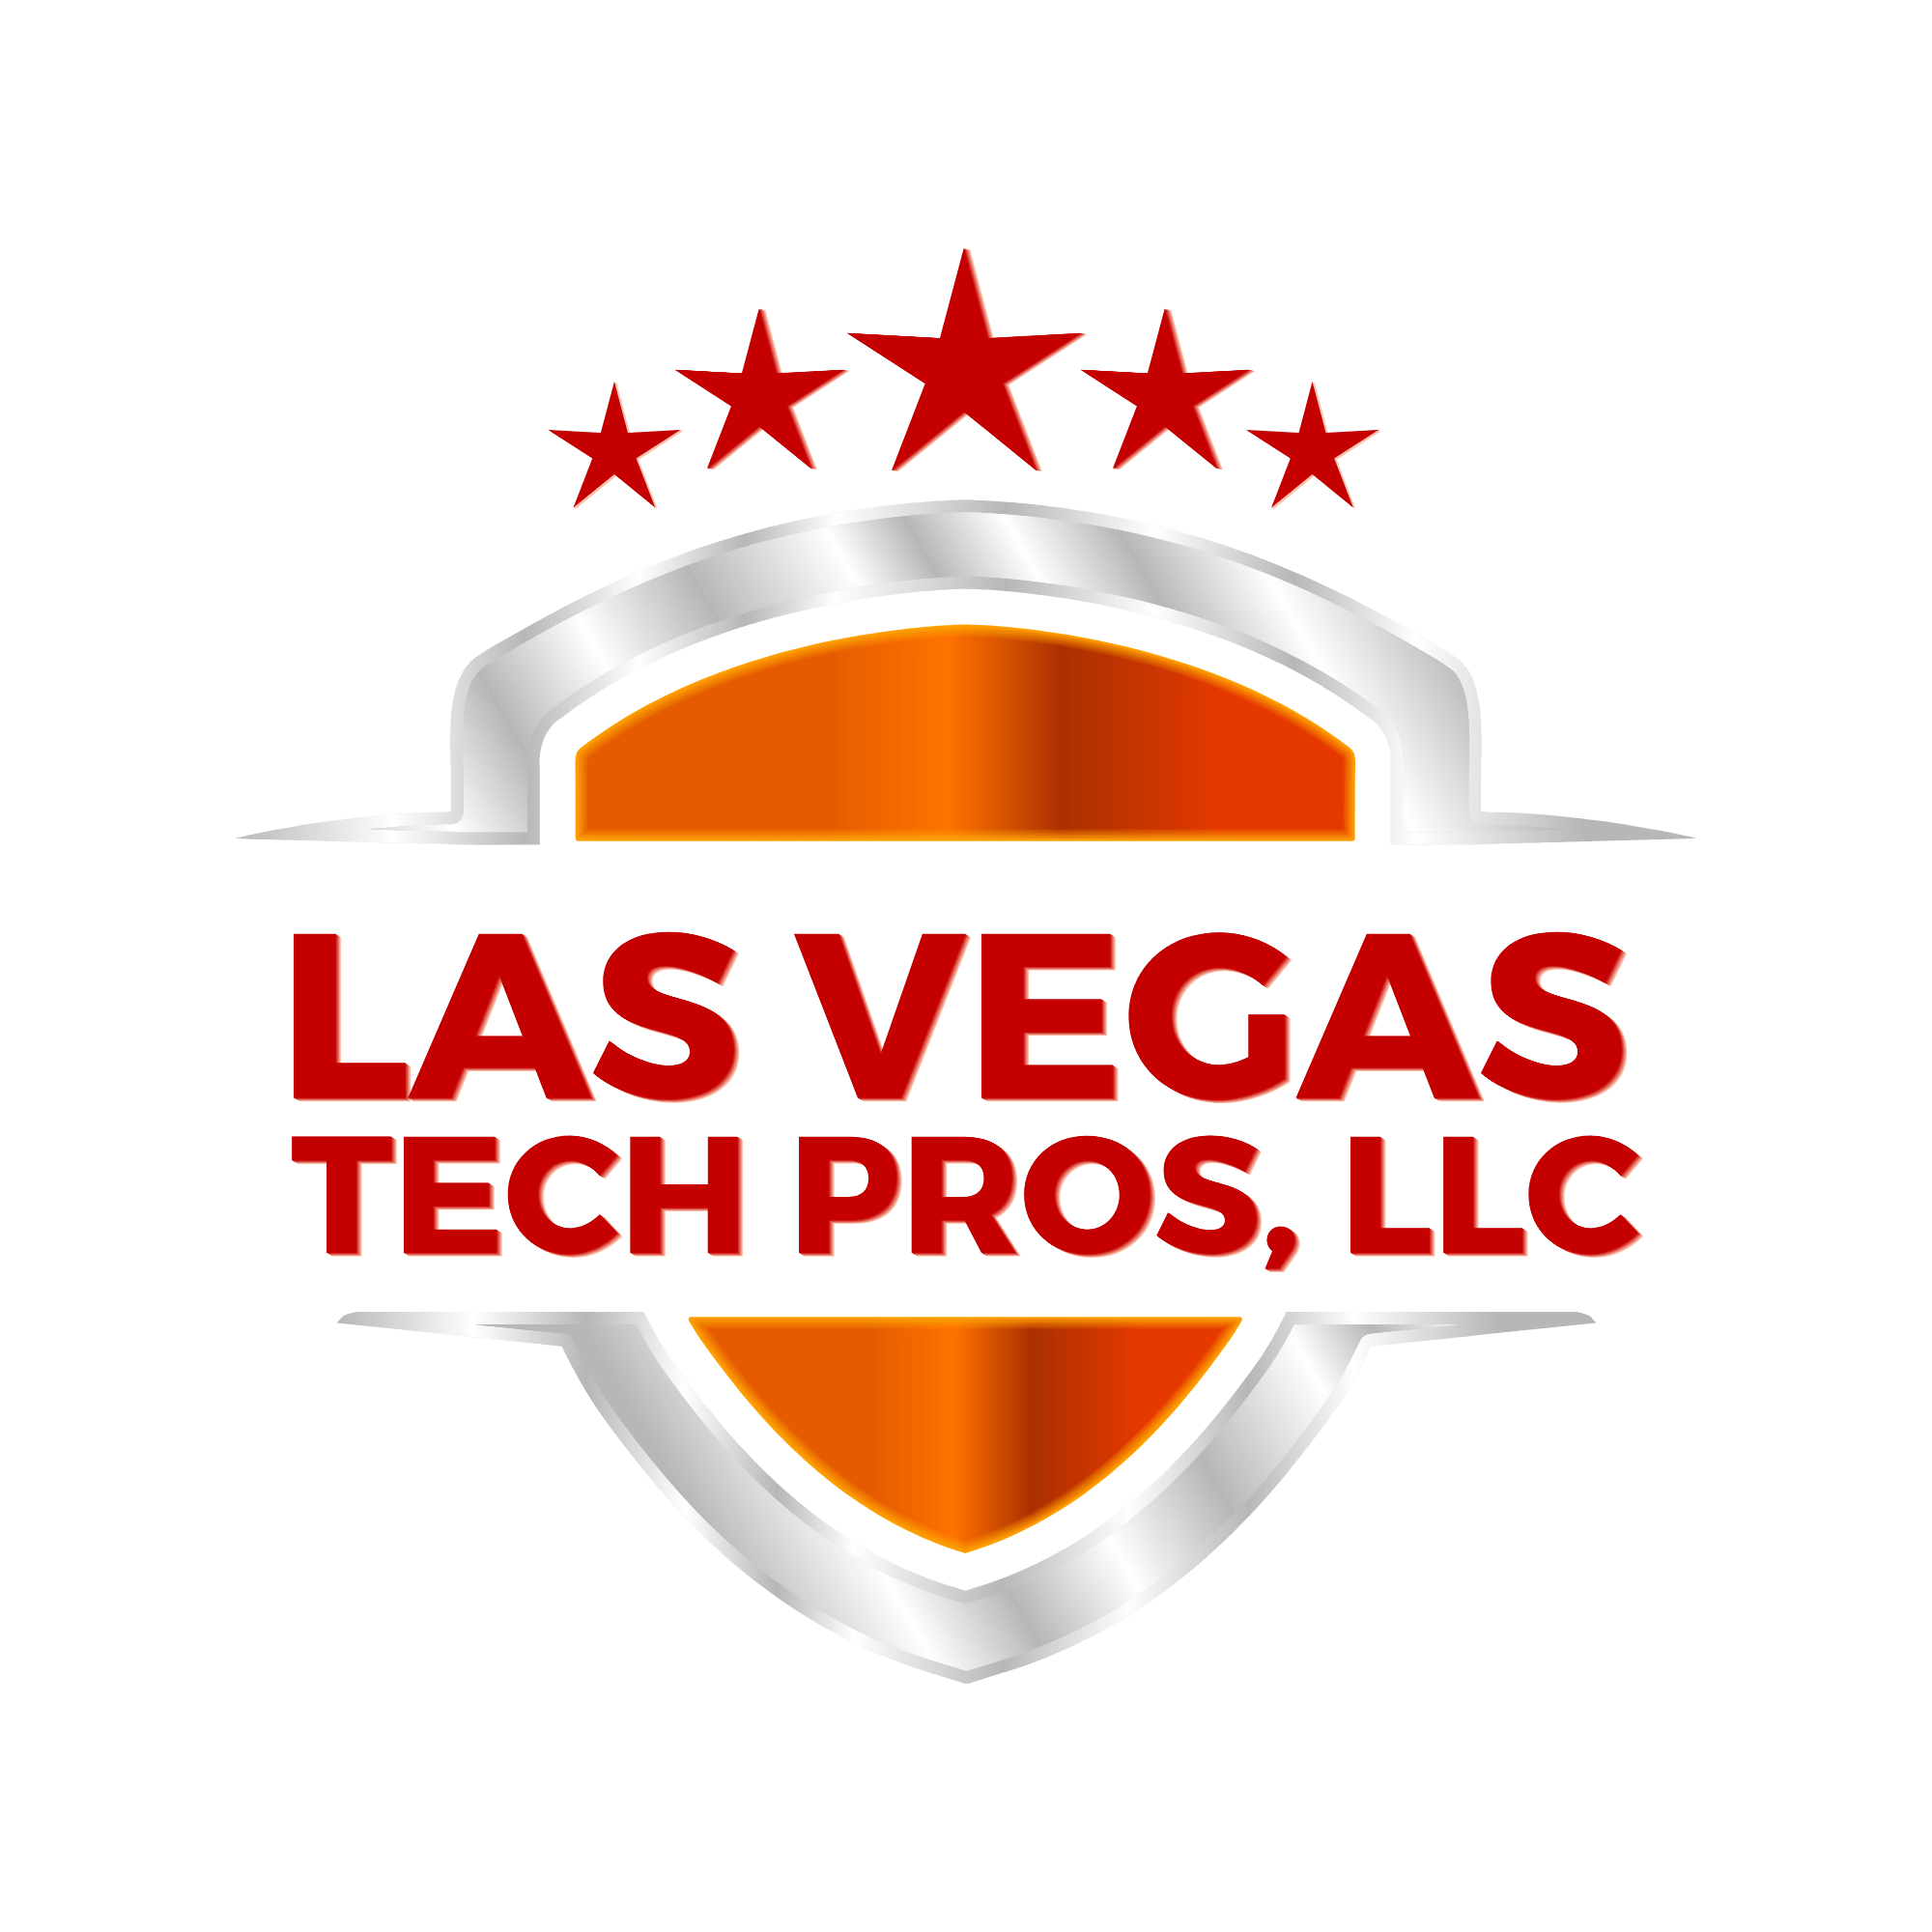 Las Vegas Tech Pros, LLC